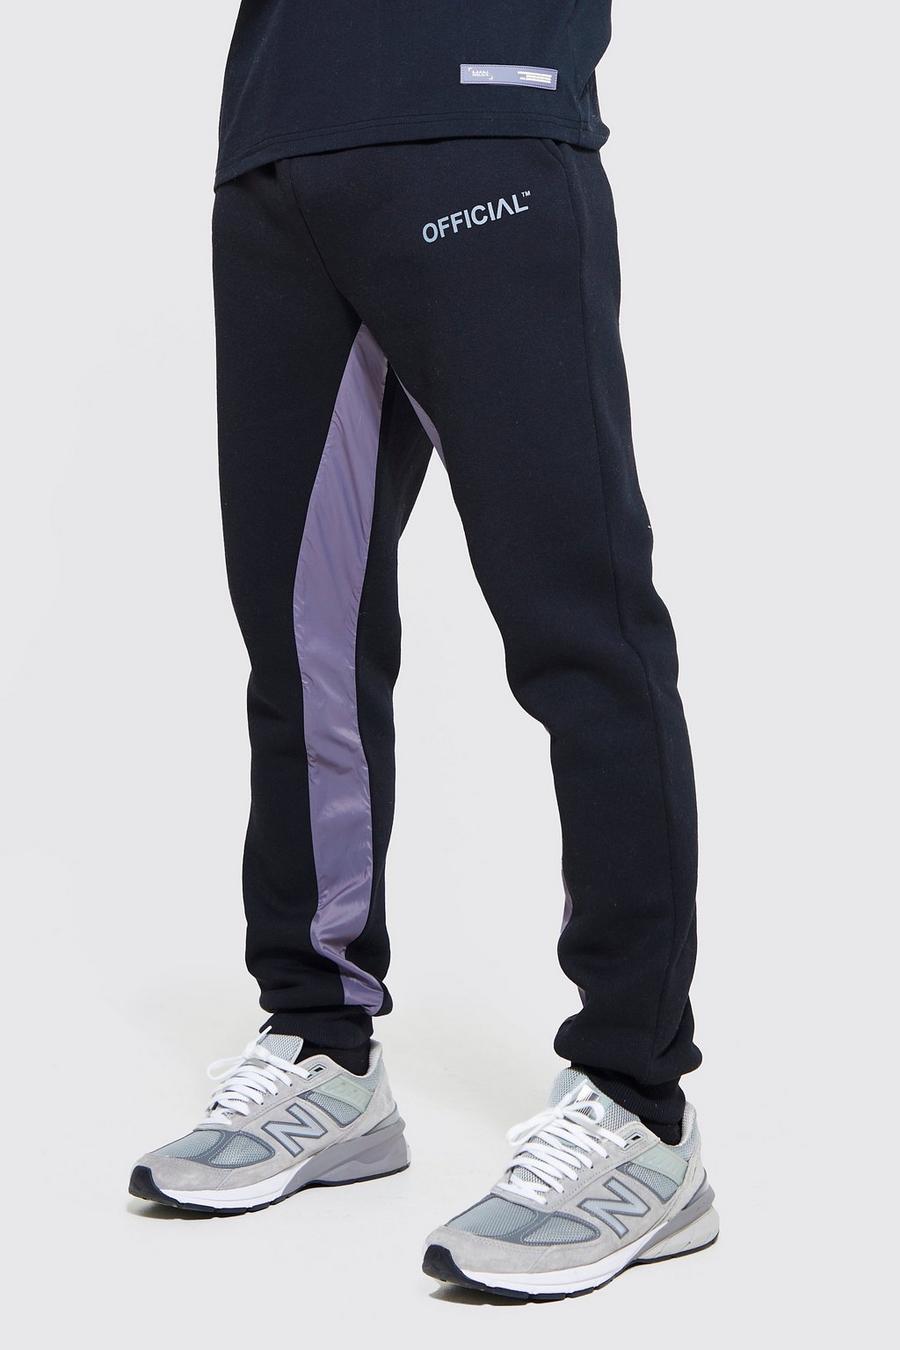 Slim-Fit Official Jogginghose mit Nylon-Einsatz, Black schwarz